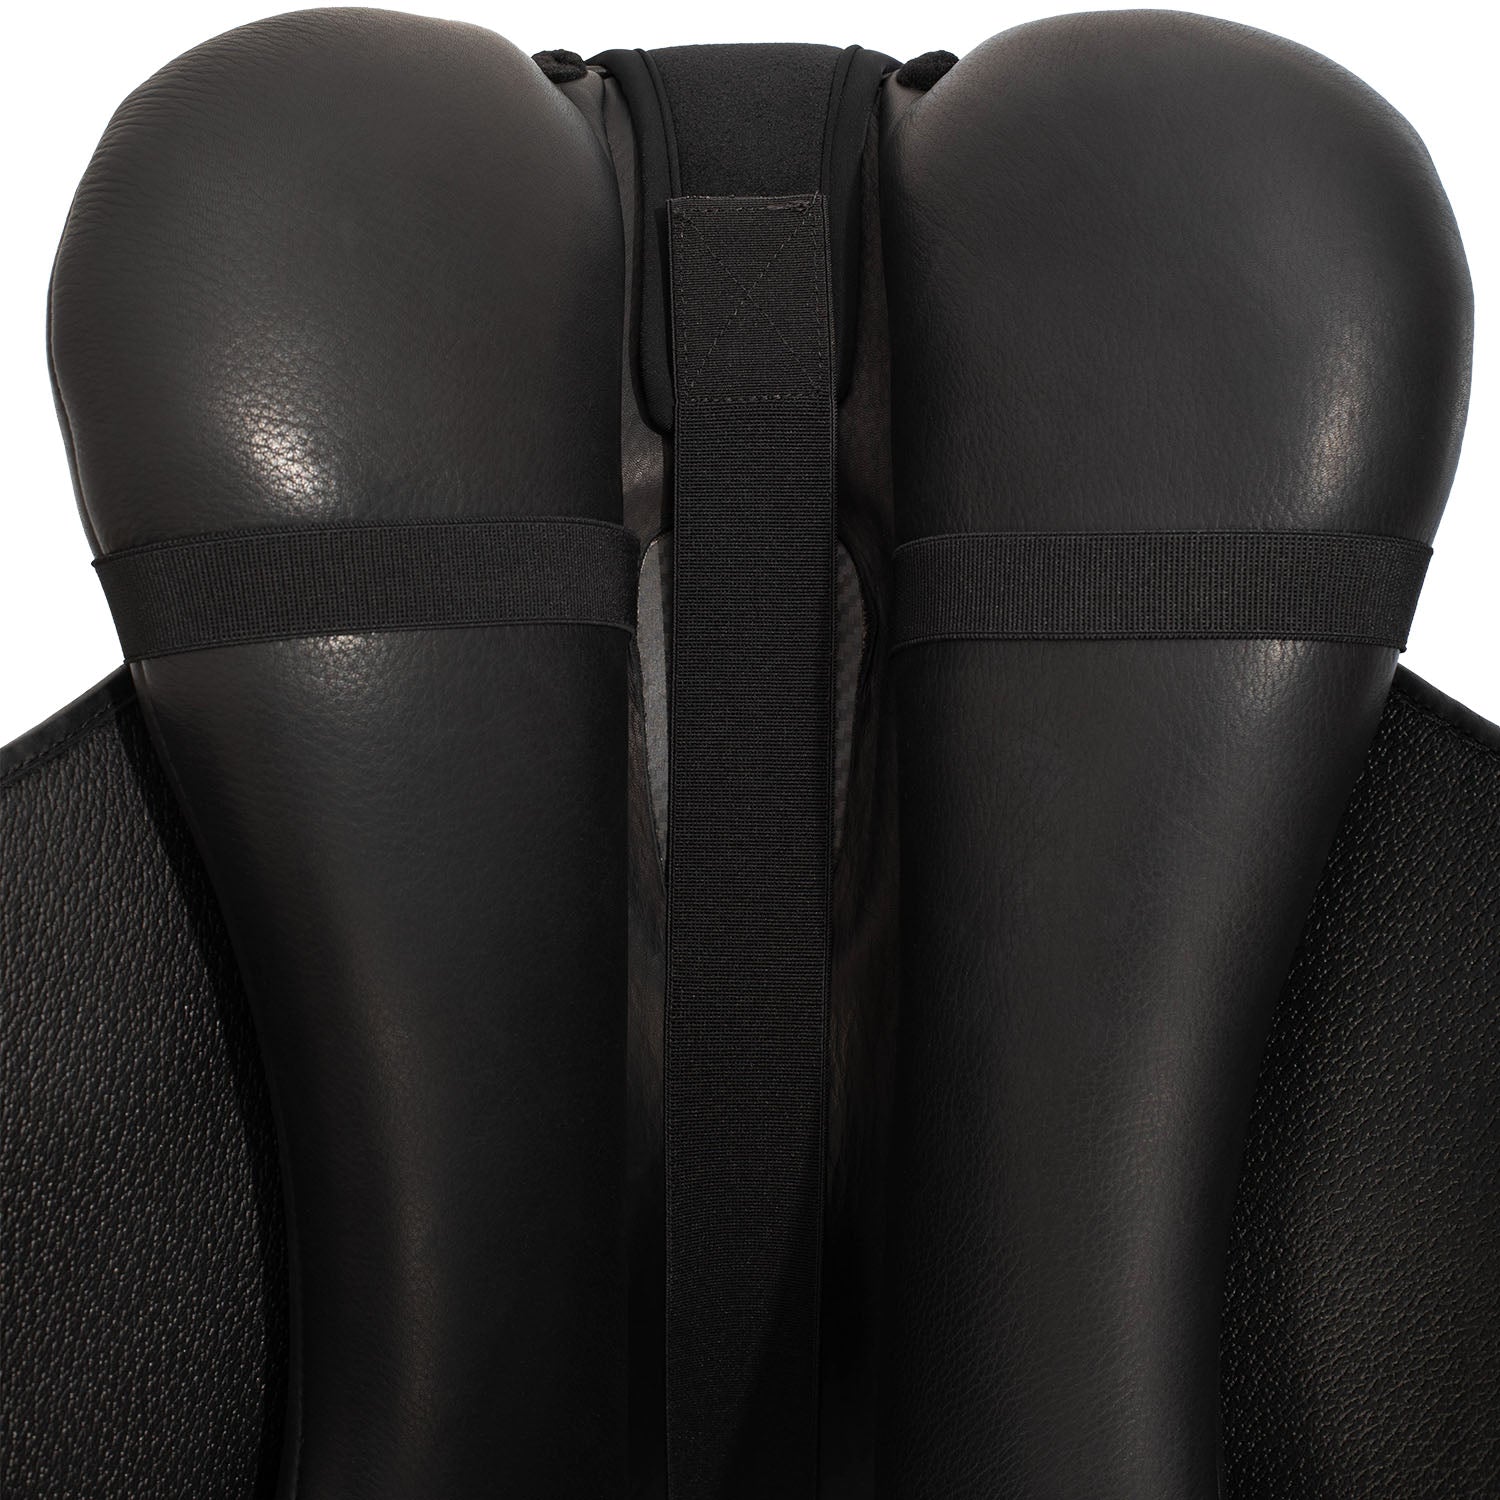 Sitz Bezug Ortho-Coccyx dressage 20mm gel seat saver Dri-lex - Reitstiefel Kandel - Dein Reitshop